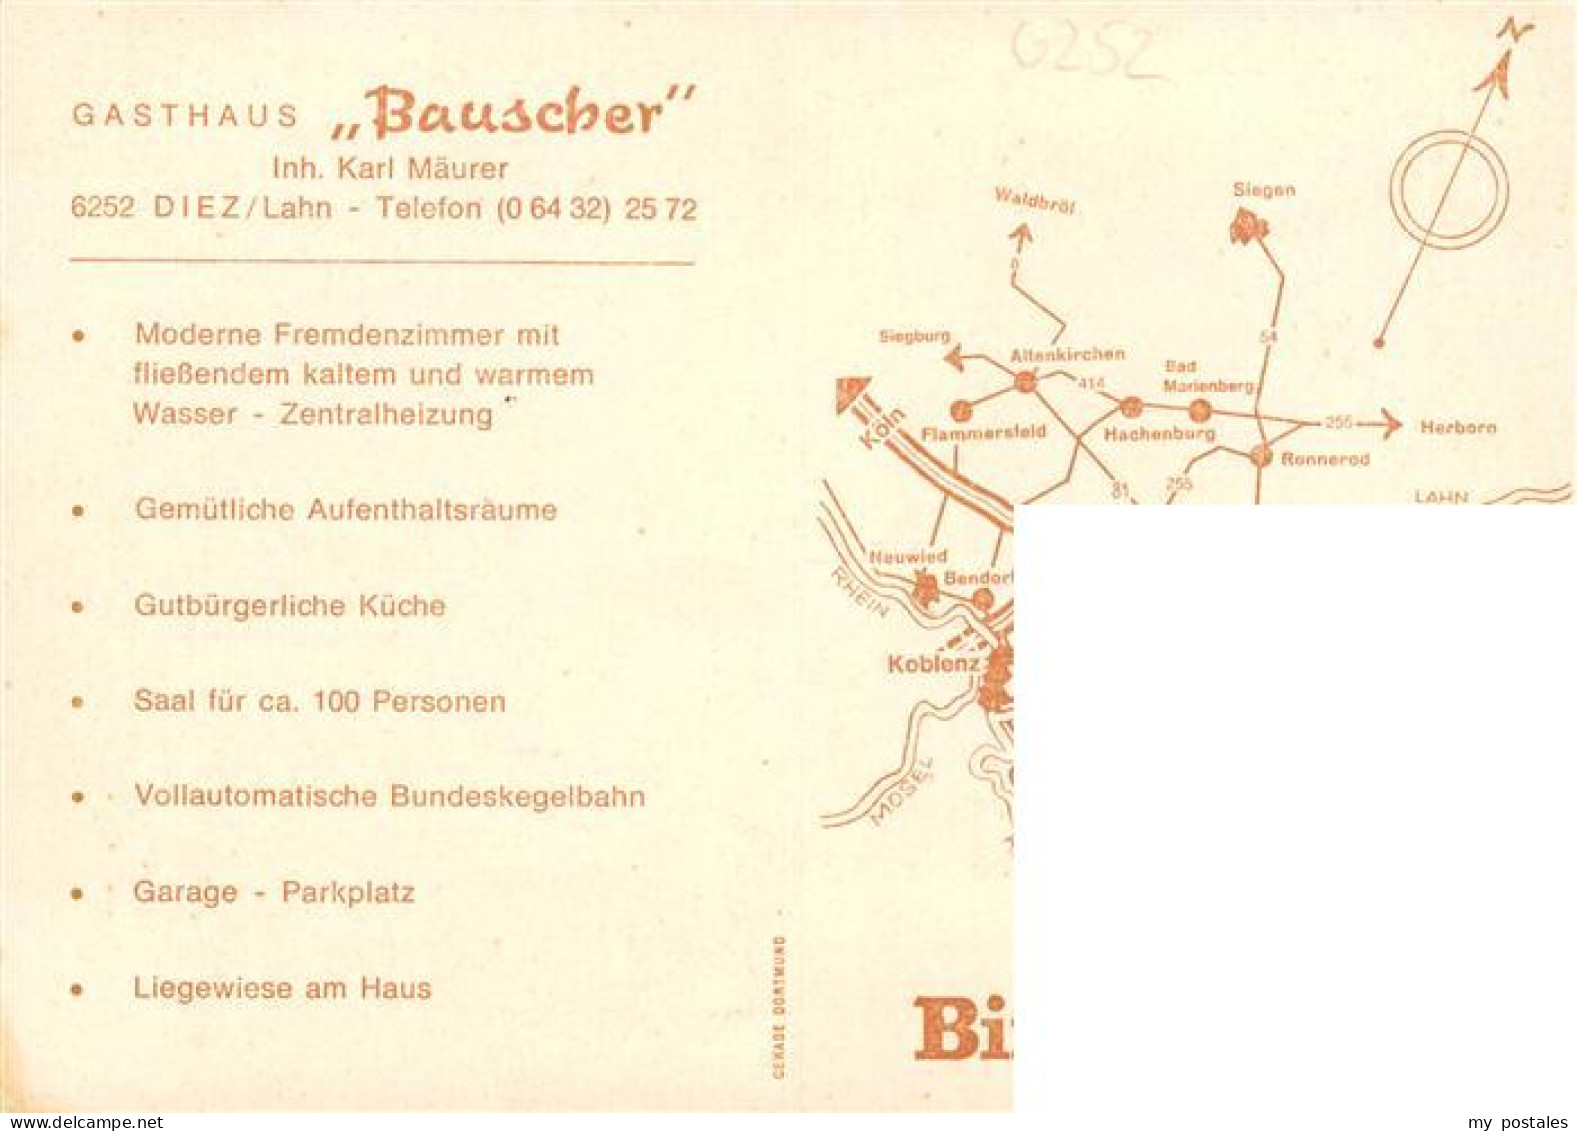 73936215 Diez_Lahn Gasthaus Bauscher Gastraeume Kegelbahn - Diez